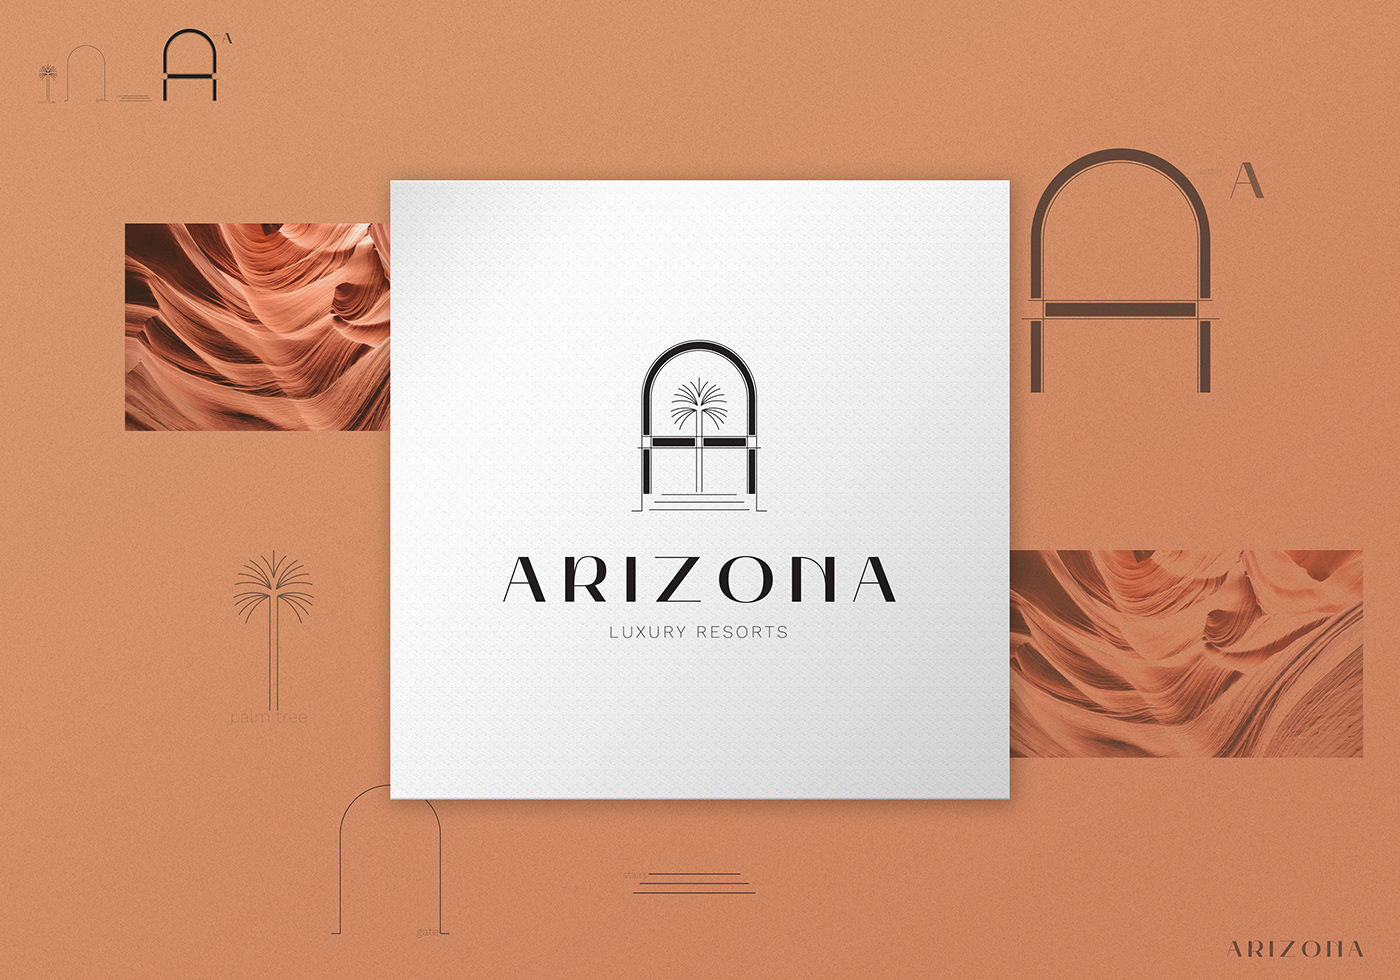 arizona logo explained.